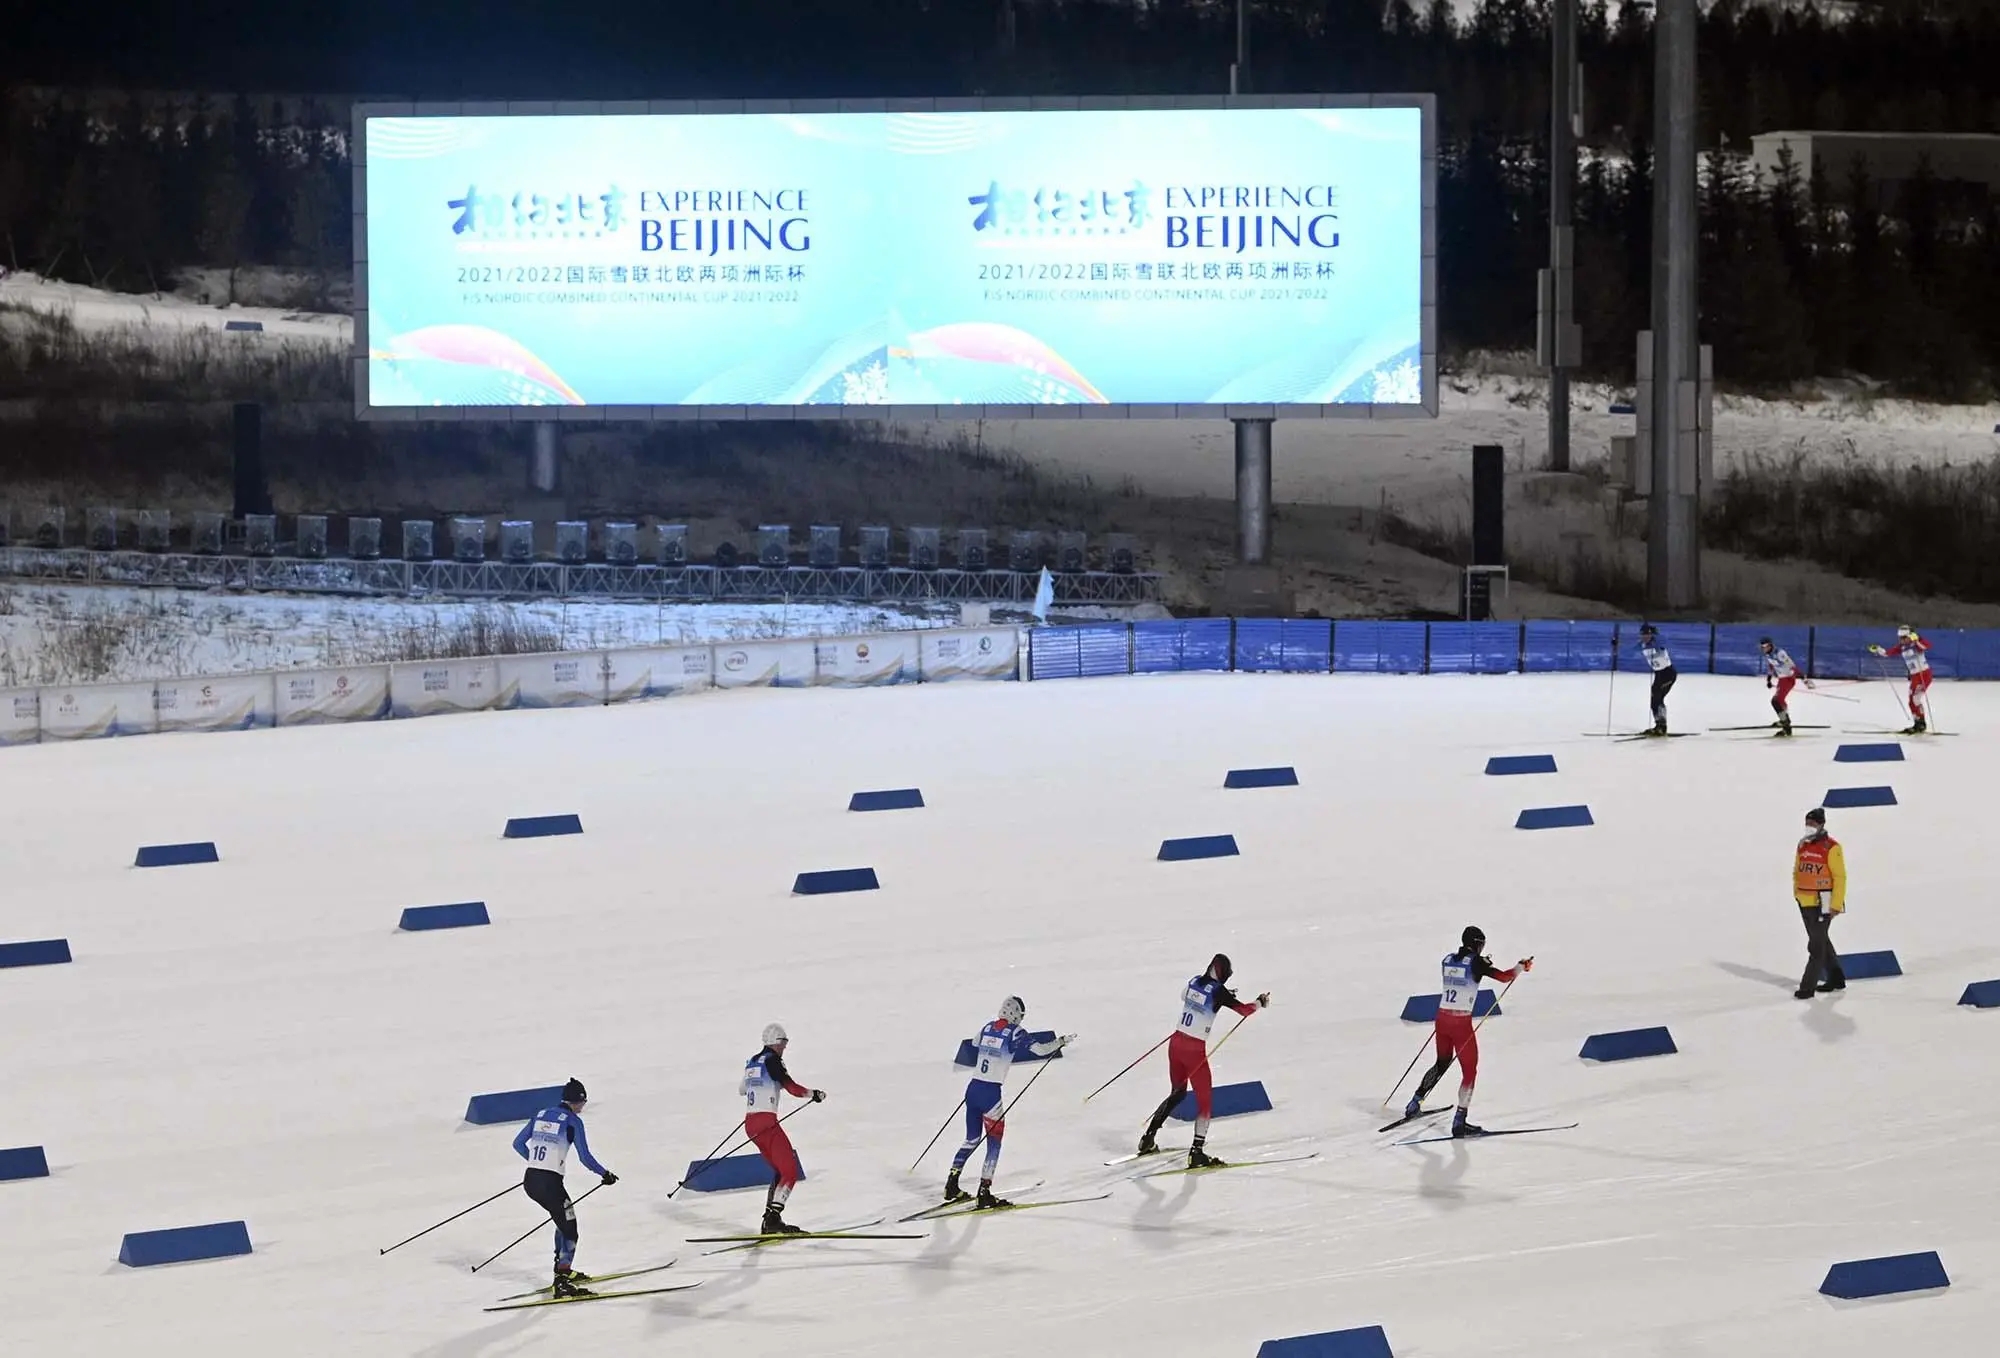 张家口赛区古杨树越野滑雪中心举行“相约北京”系列测试赛。图自北京冬奥组委官网